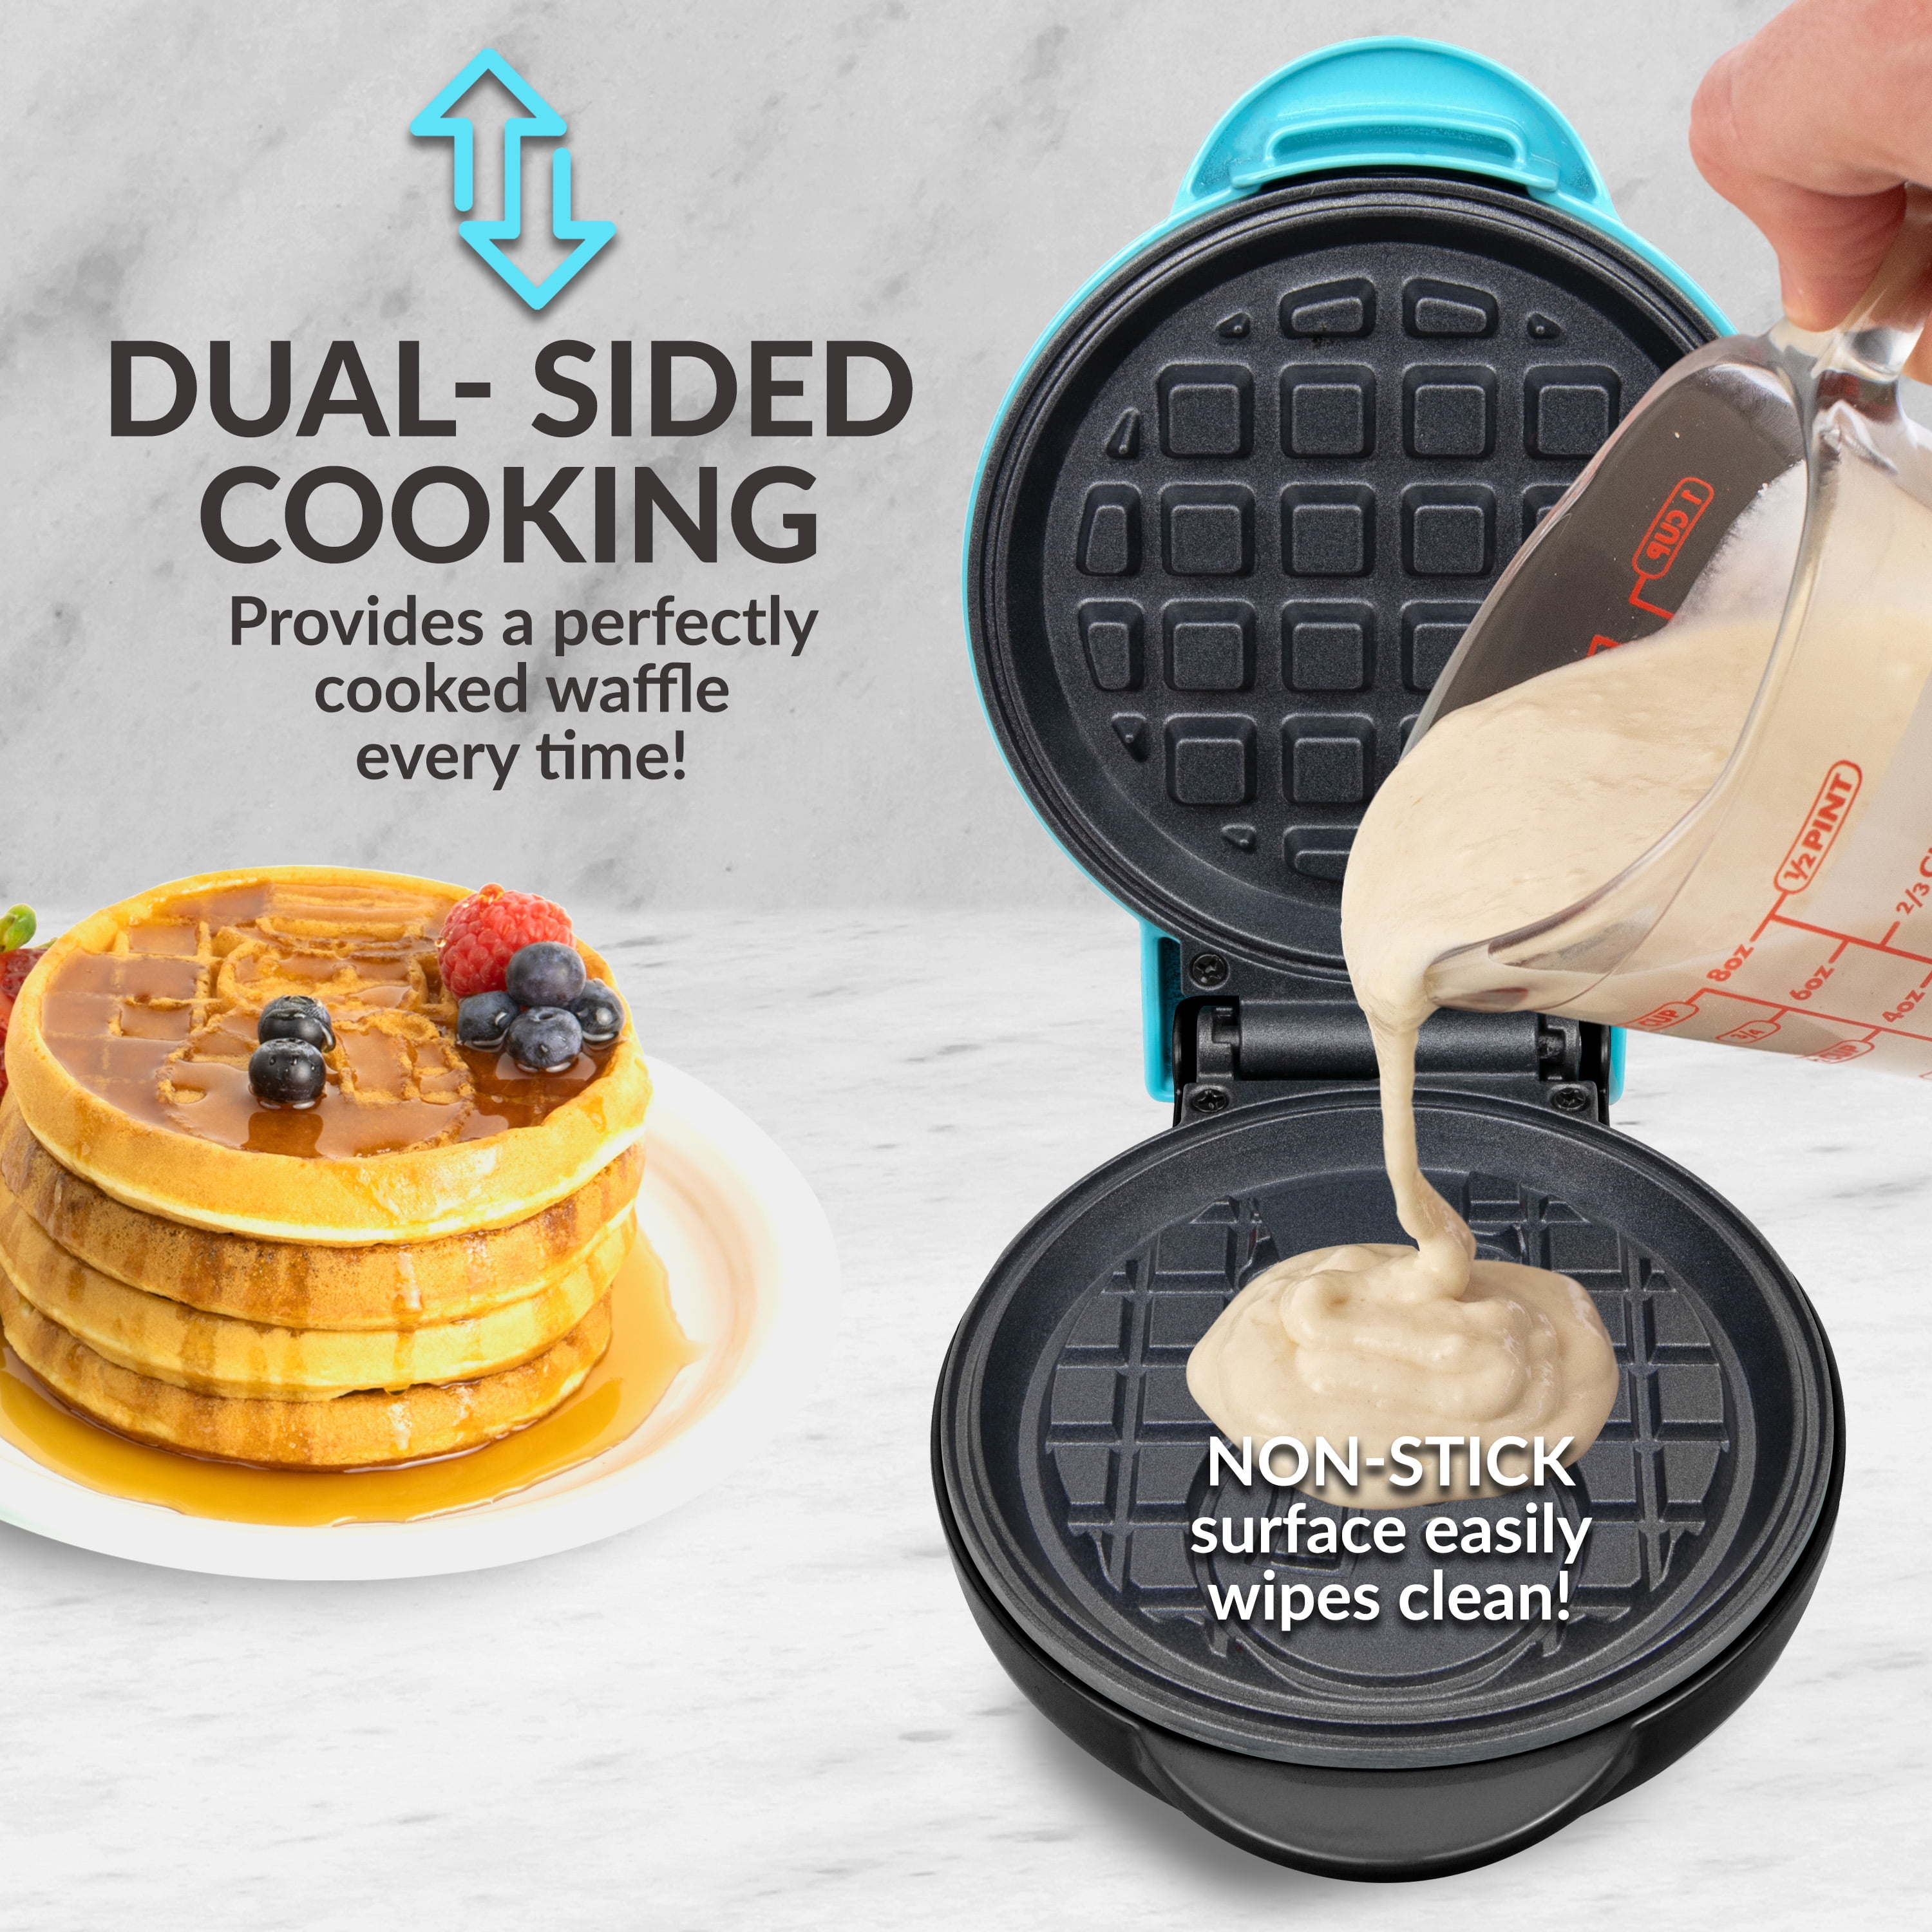 Dash Snowman Mini Waffle Maker with Ceramic Non-Stick Plates | Crate & Barrel